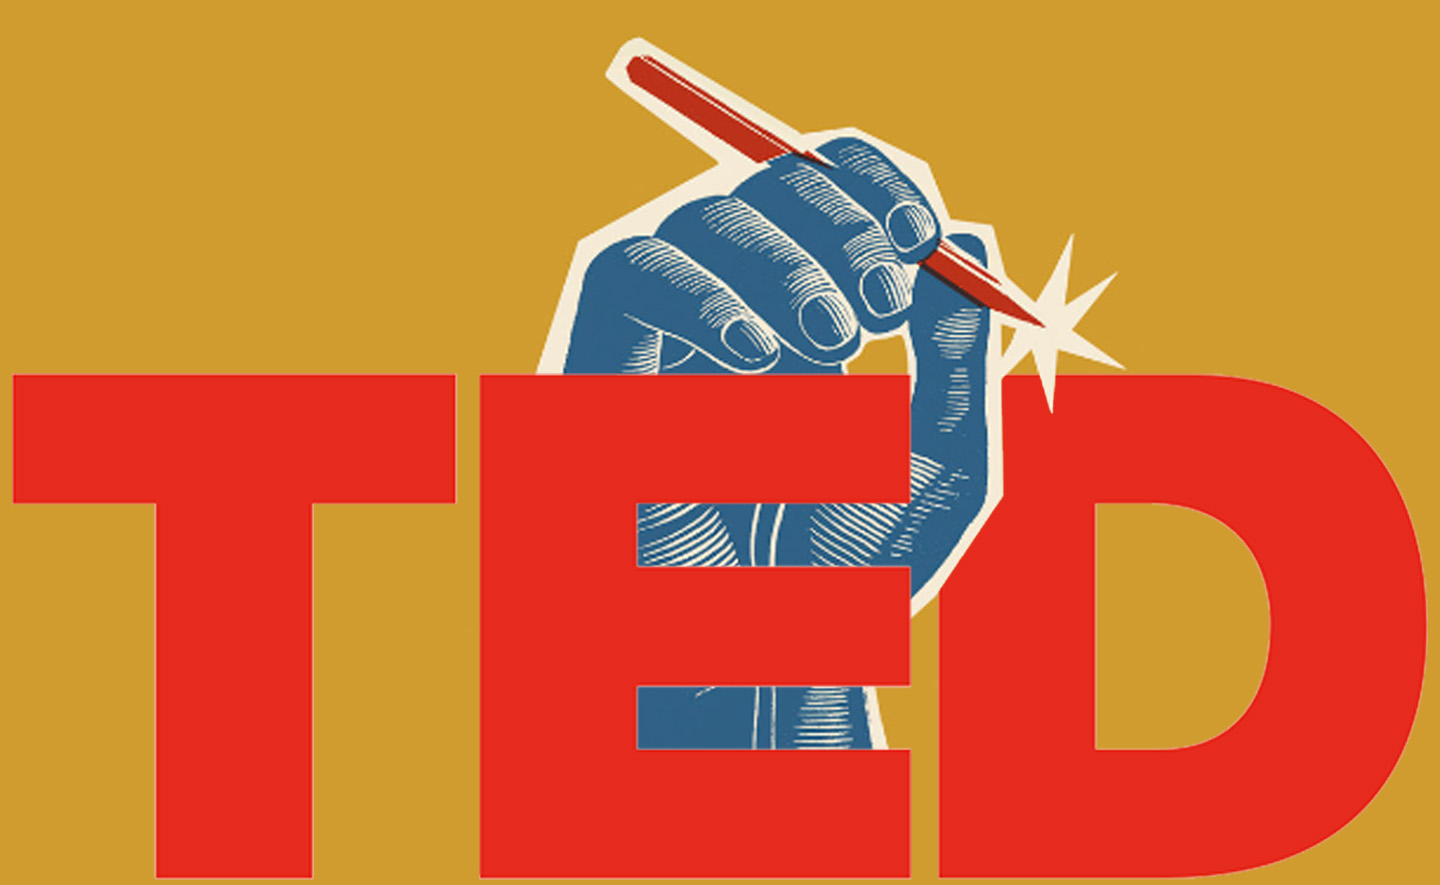 12 bài TED talk ấn tượng đến từ các tác giả 